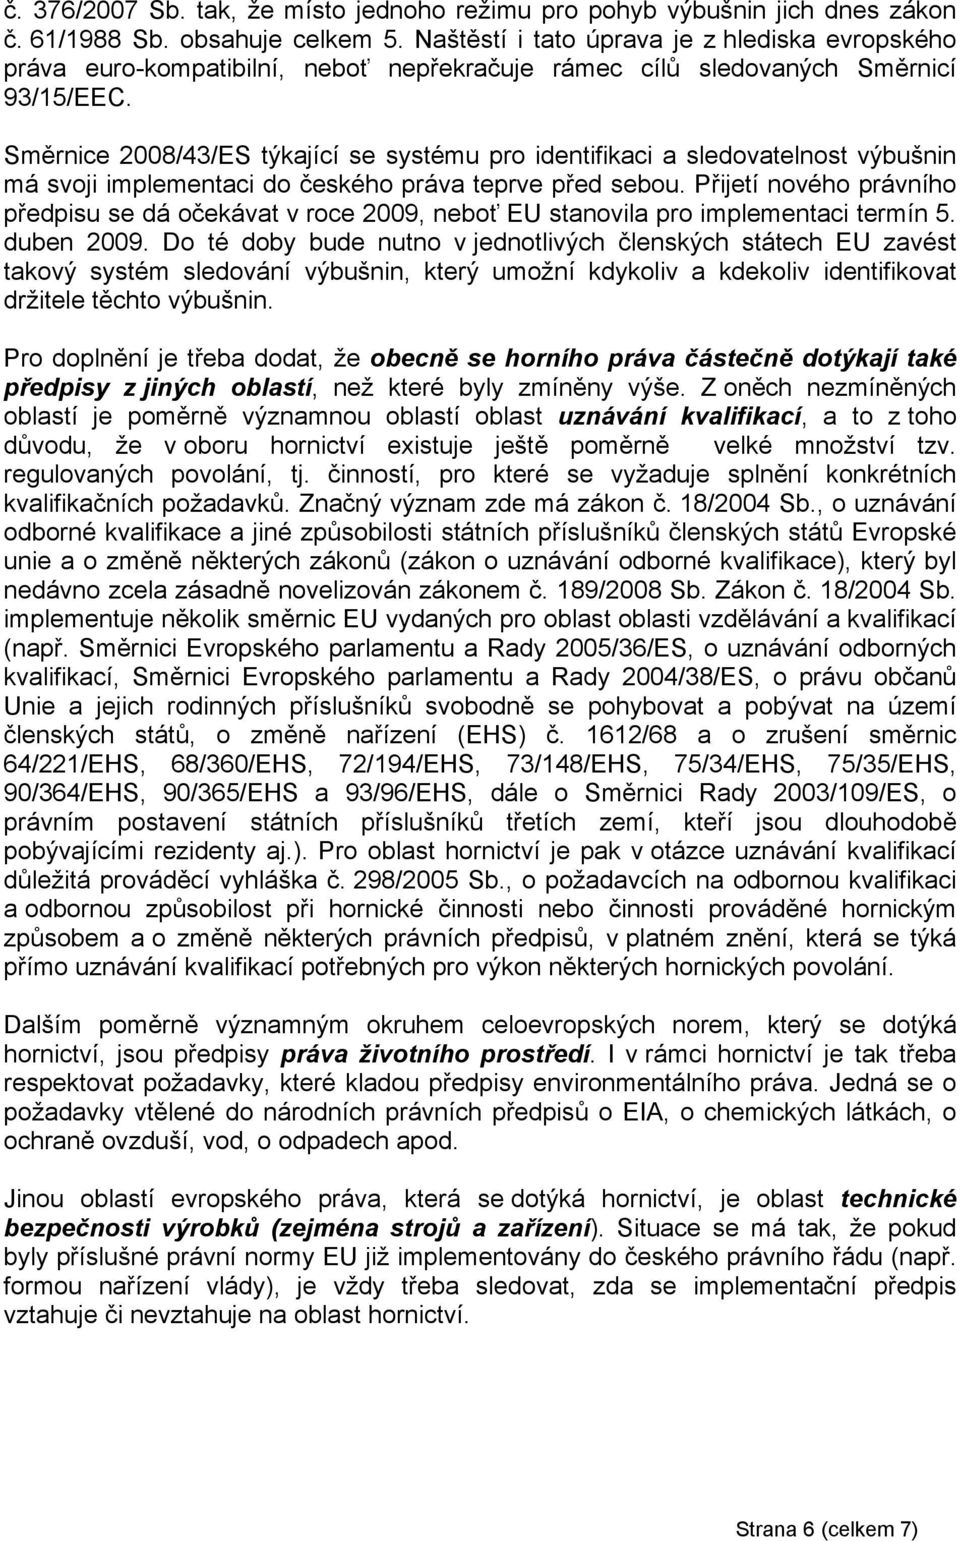 Směrnice 2008/43/ES týkající se systému pro identifikaci a sledovatelnost výbušnin má svoji implementaci do českého práva teprve před sebou.